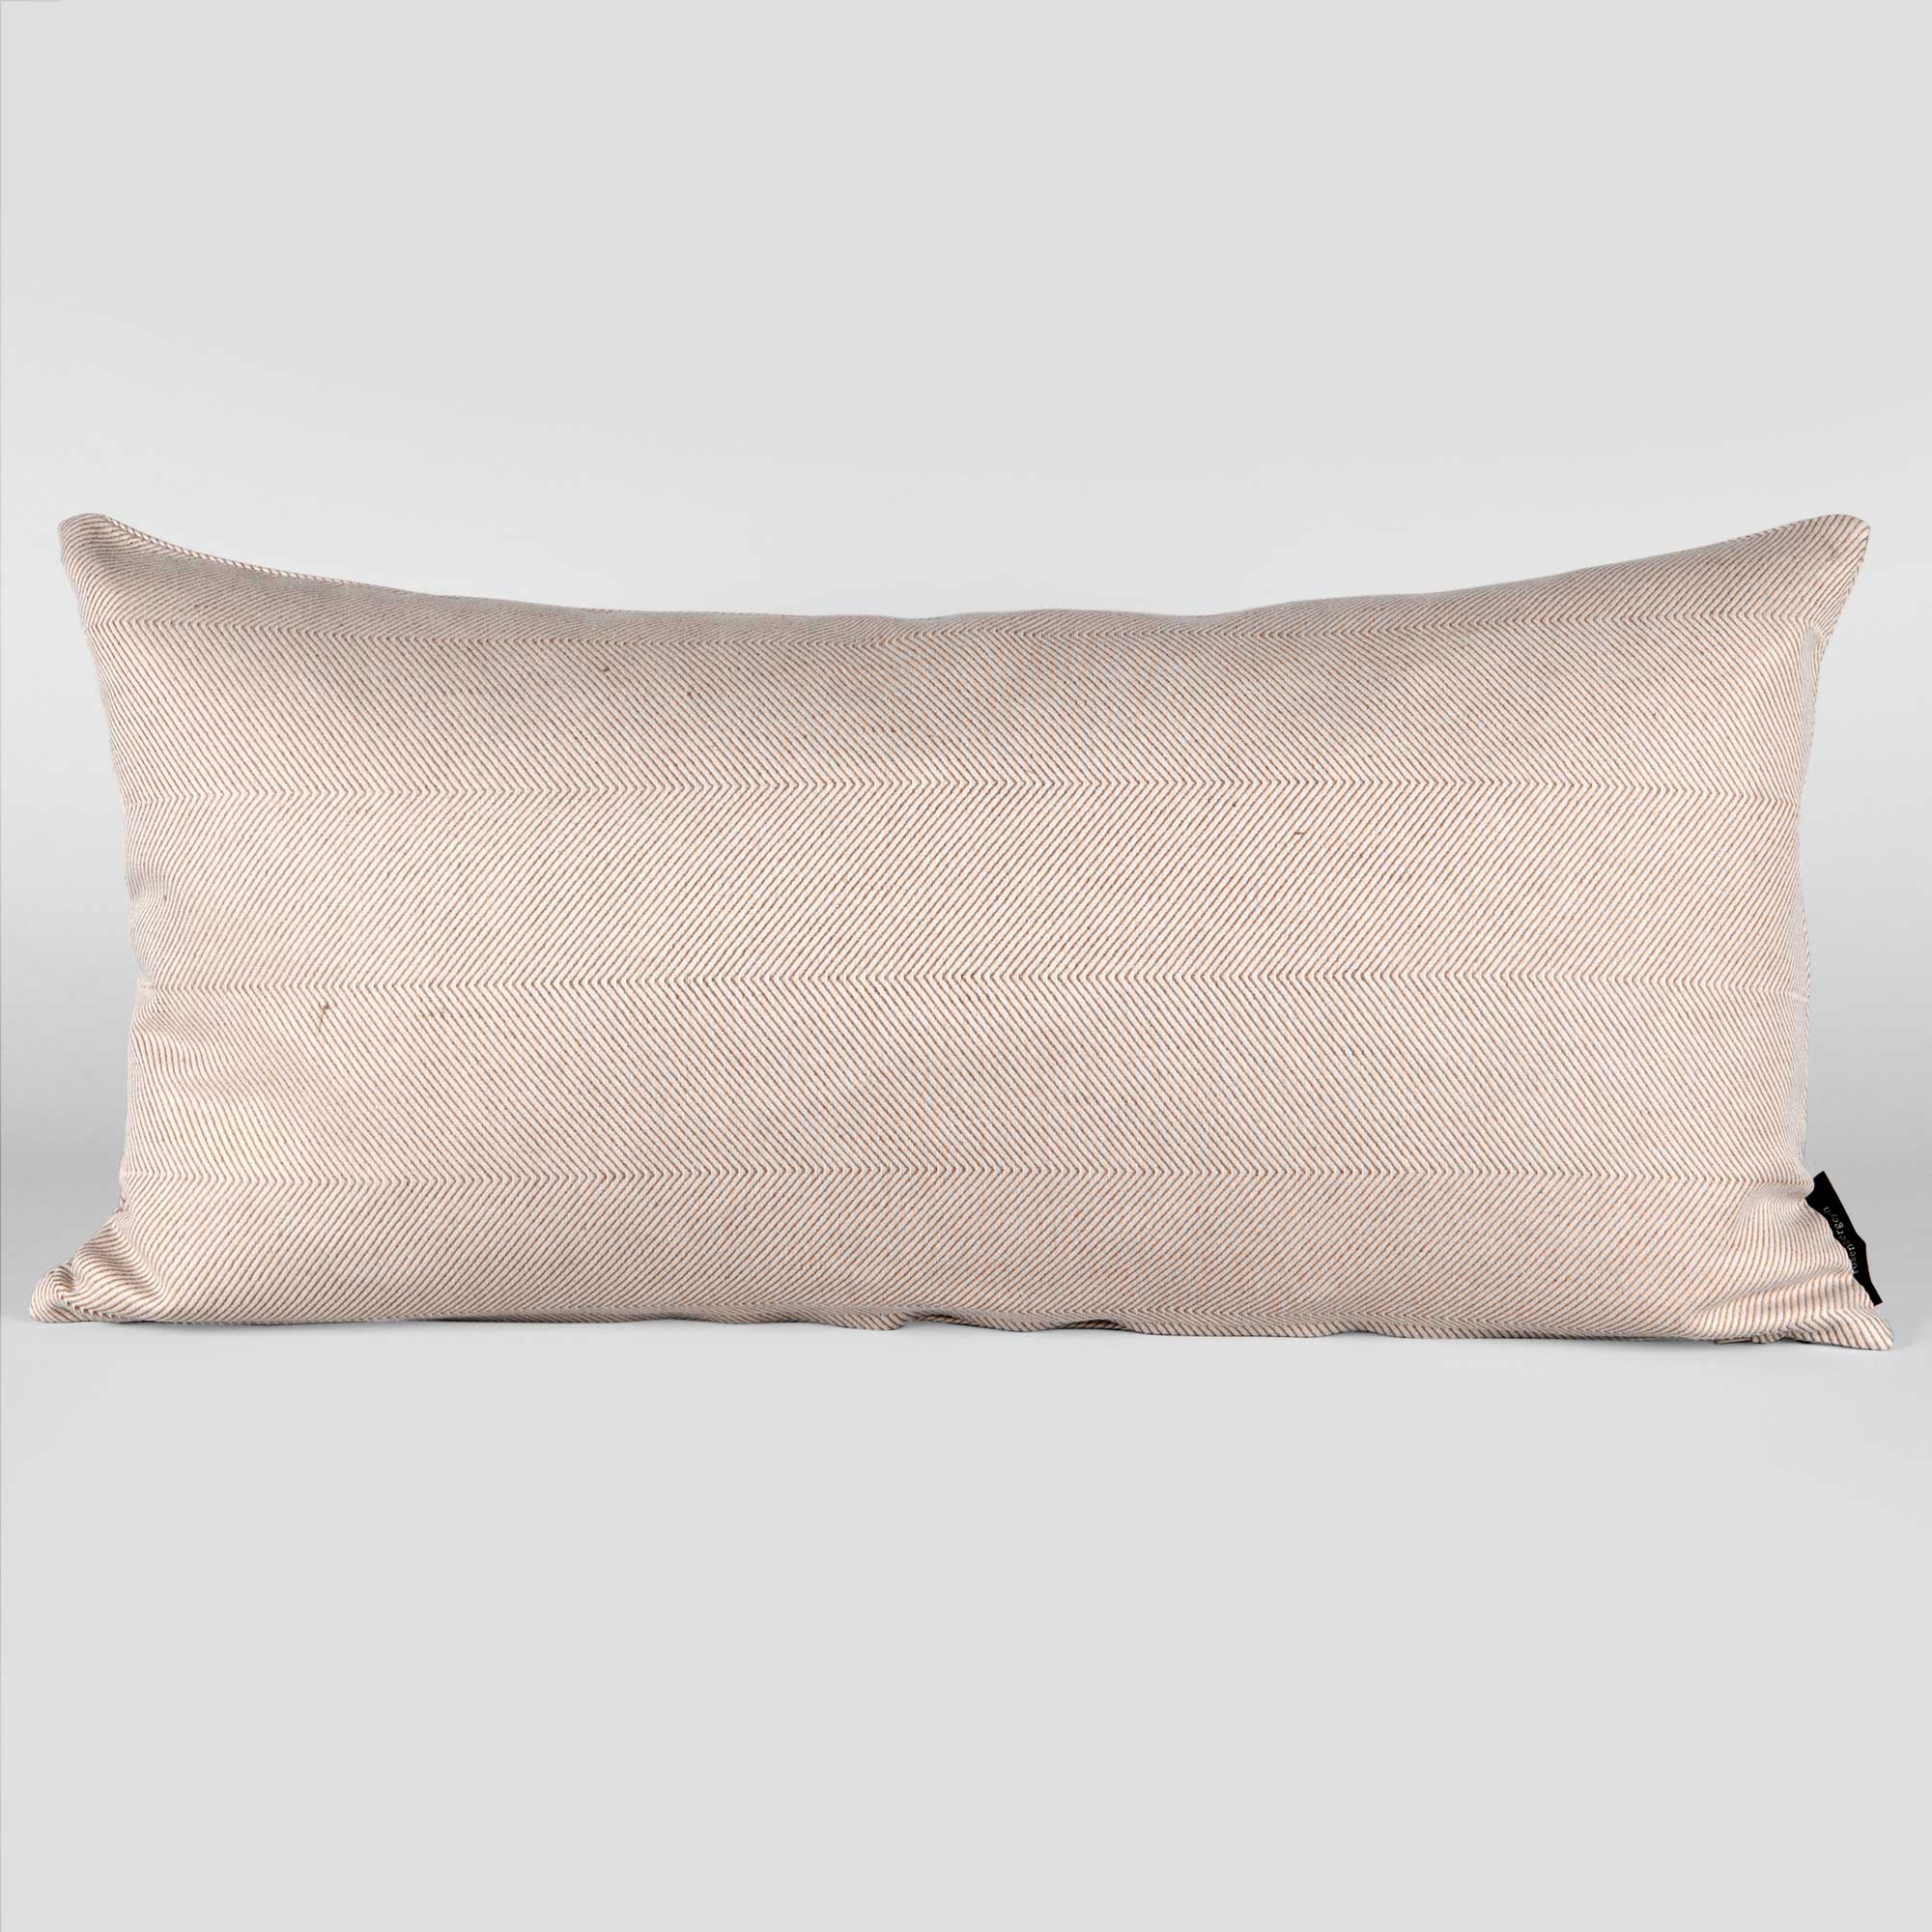 Rectangular cushion linen/cotton Light almond, design by Anne Rosenberg, RosenbergCph